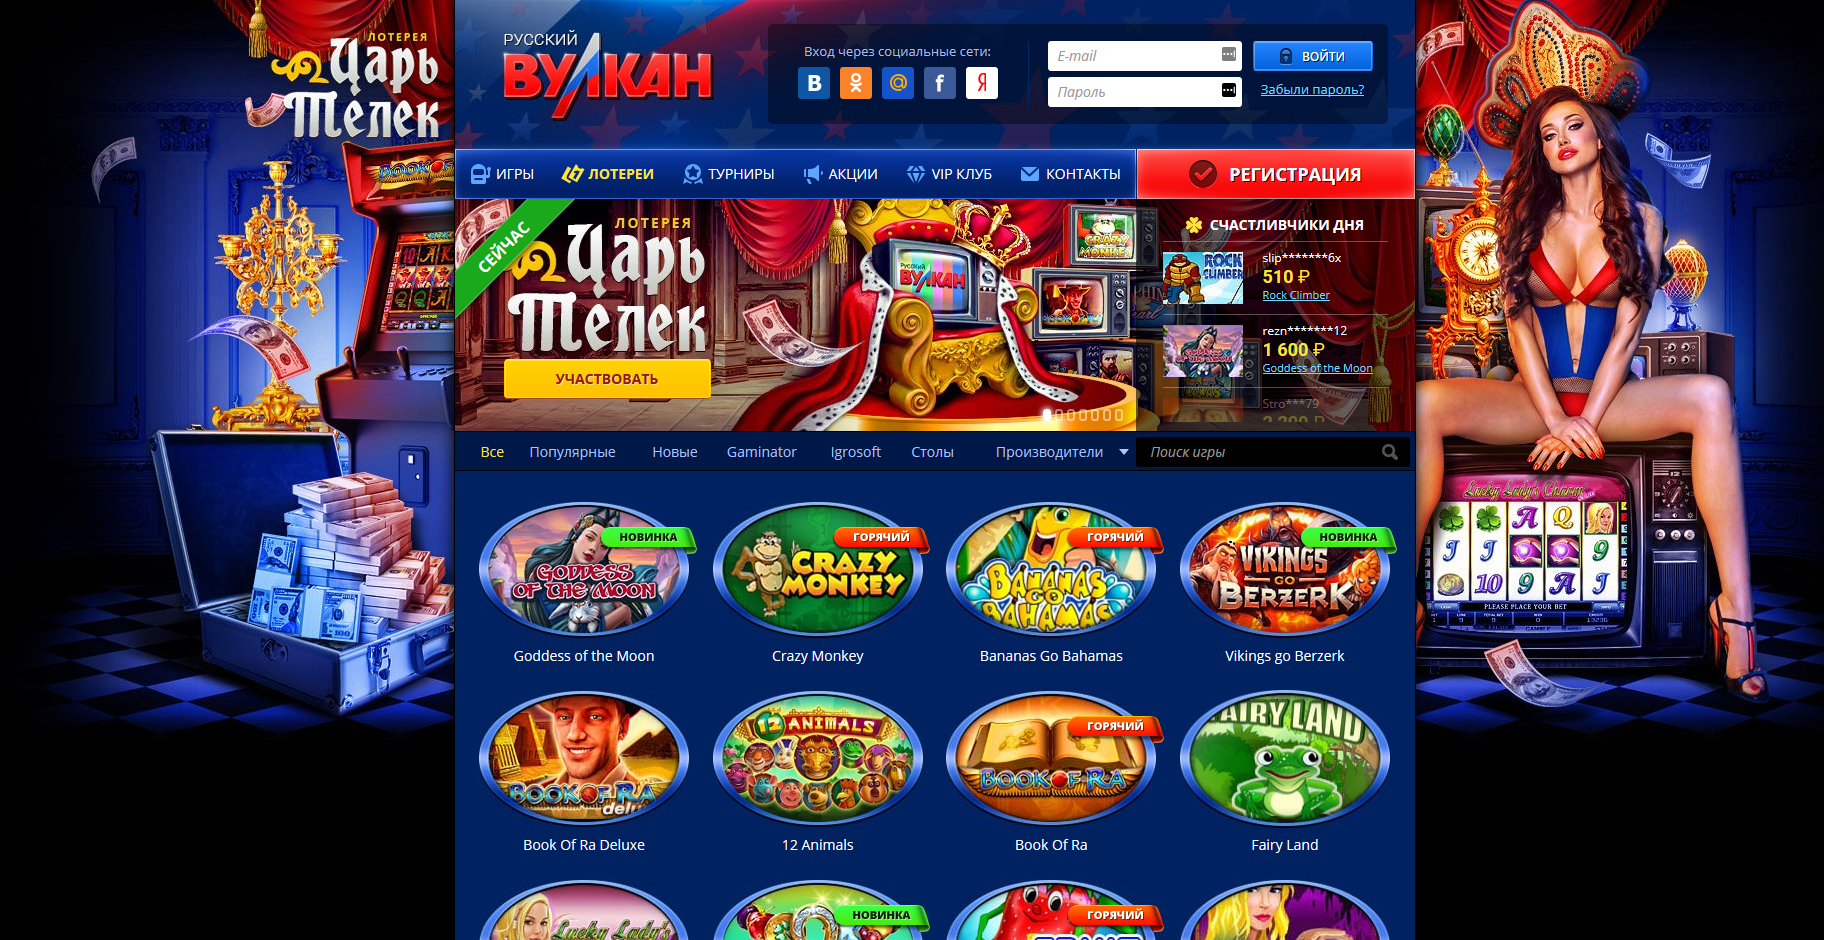 Русское казино с бонусом казино рояль онлайн автоматы